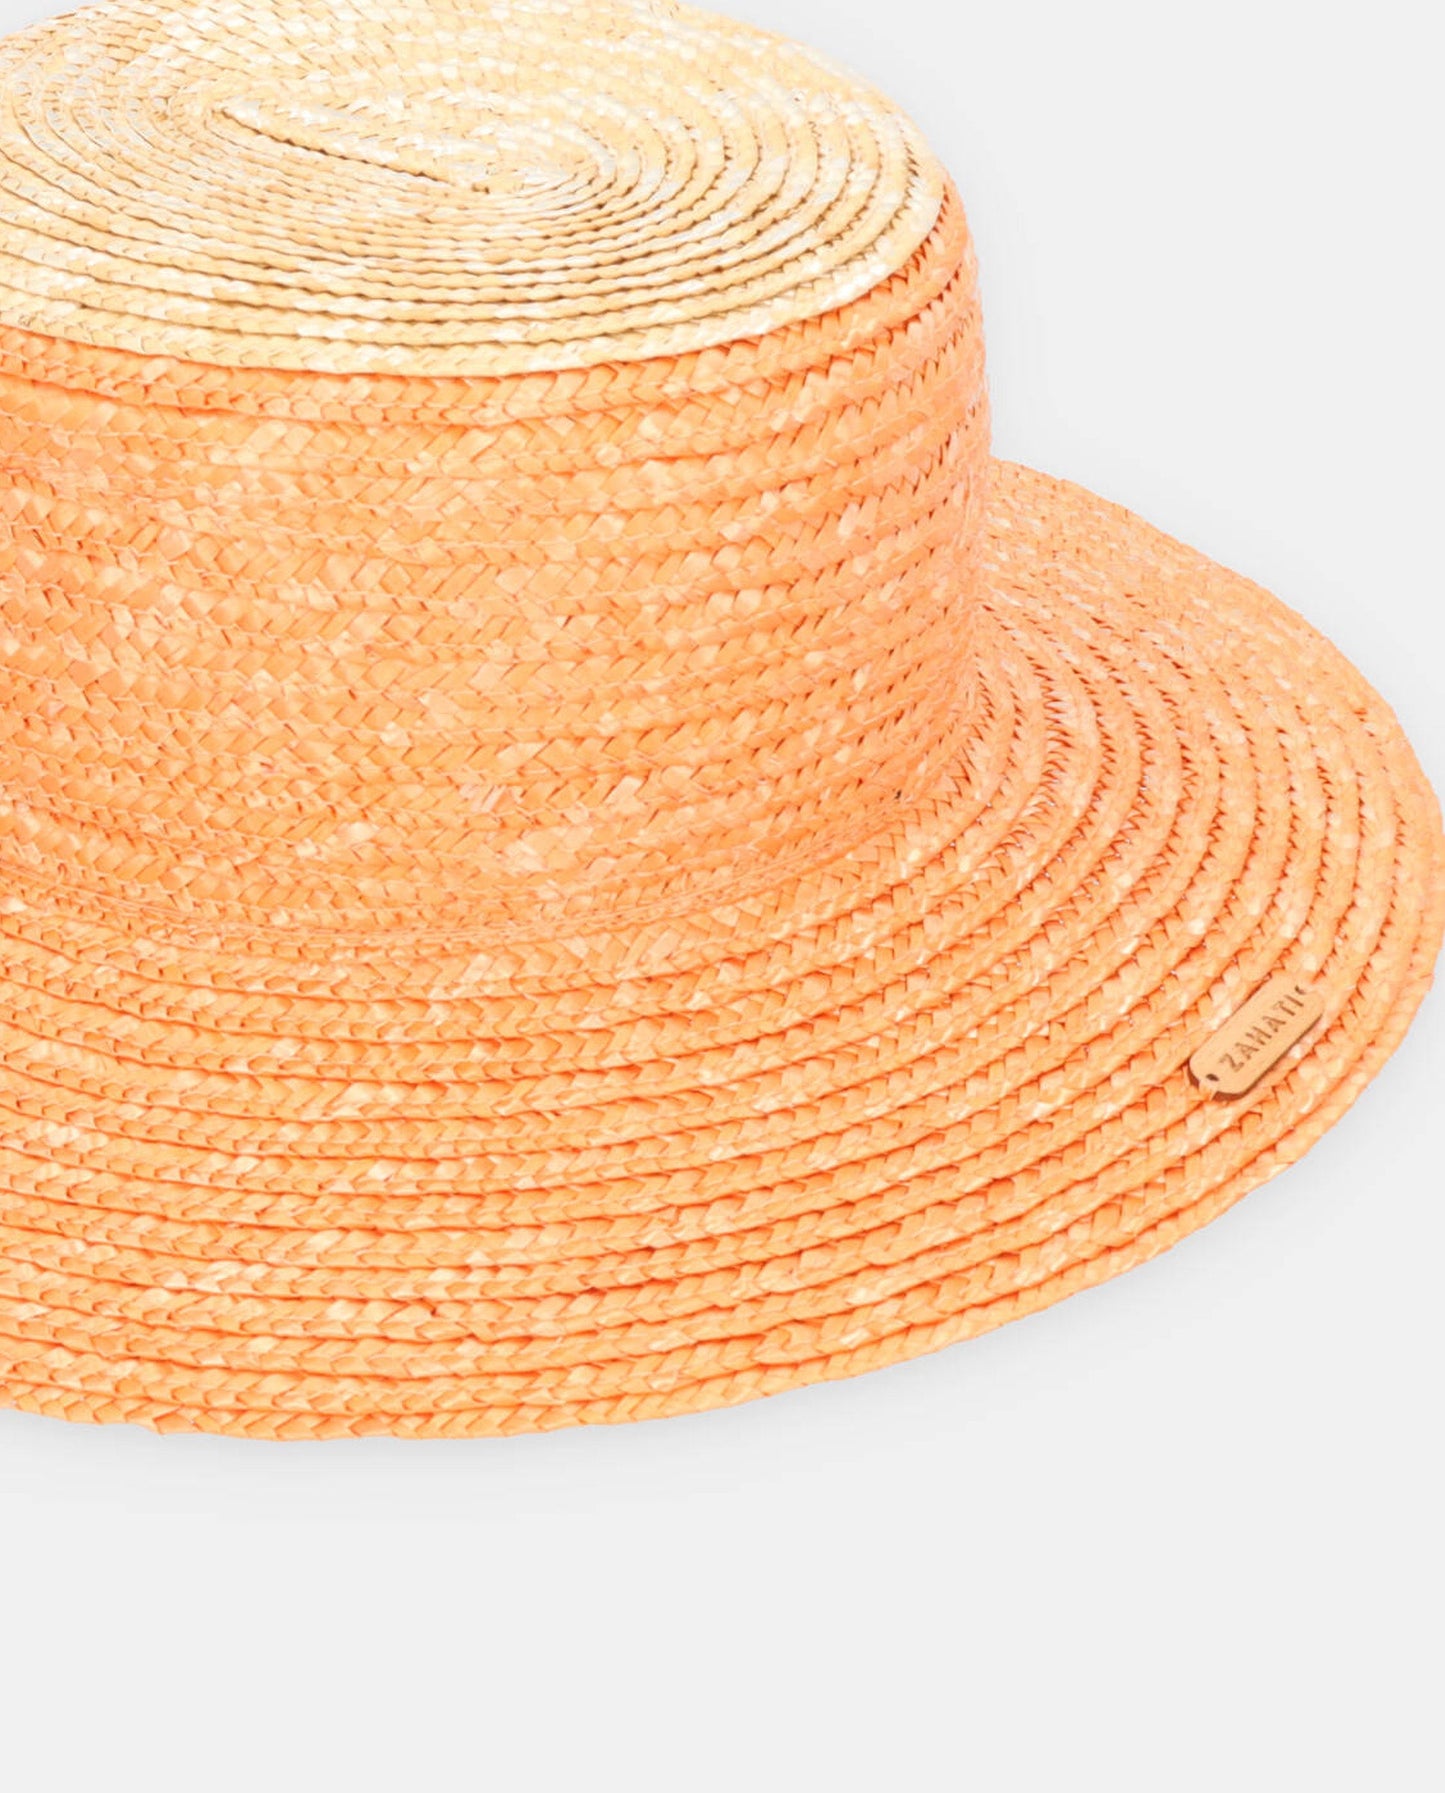 Chapeau Cuchi bicolore orange-naturel avec bord S